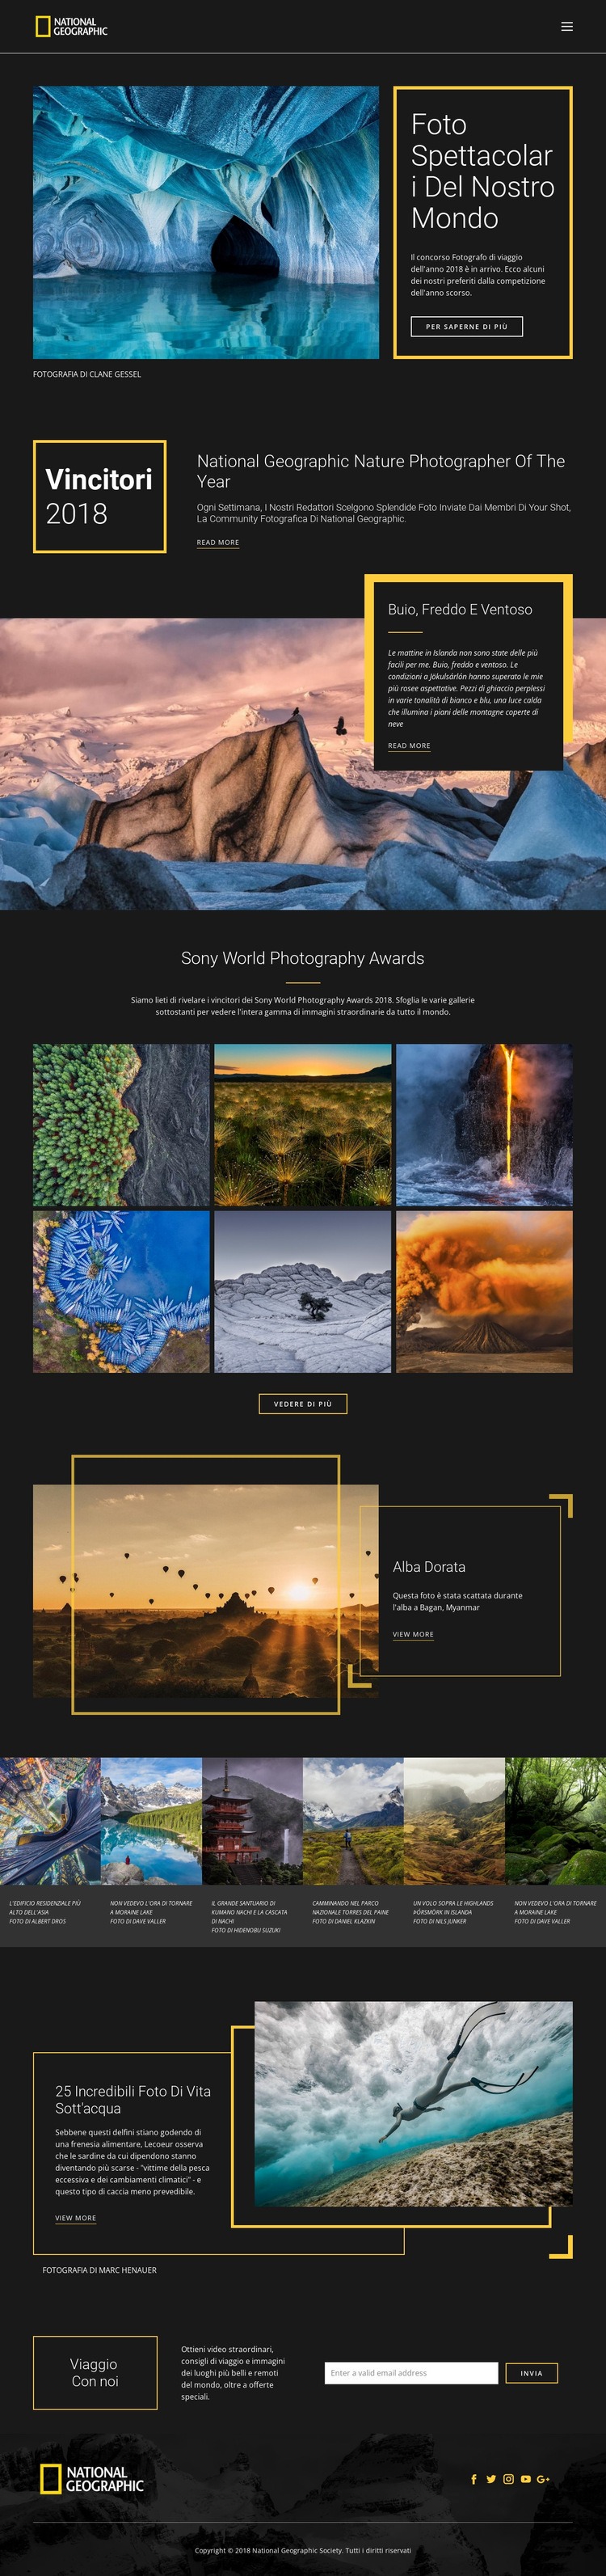 Immagini della natura Modelli di Website Builder